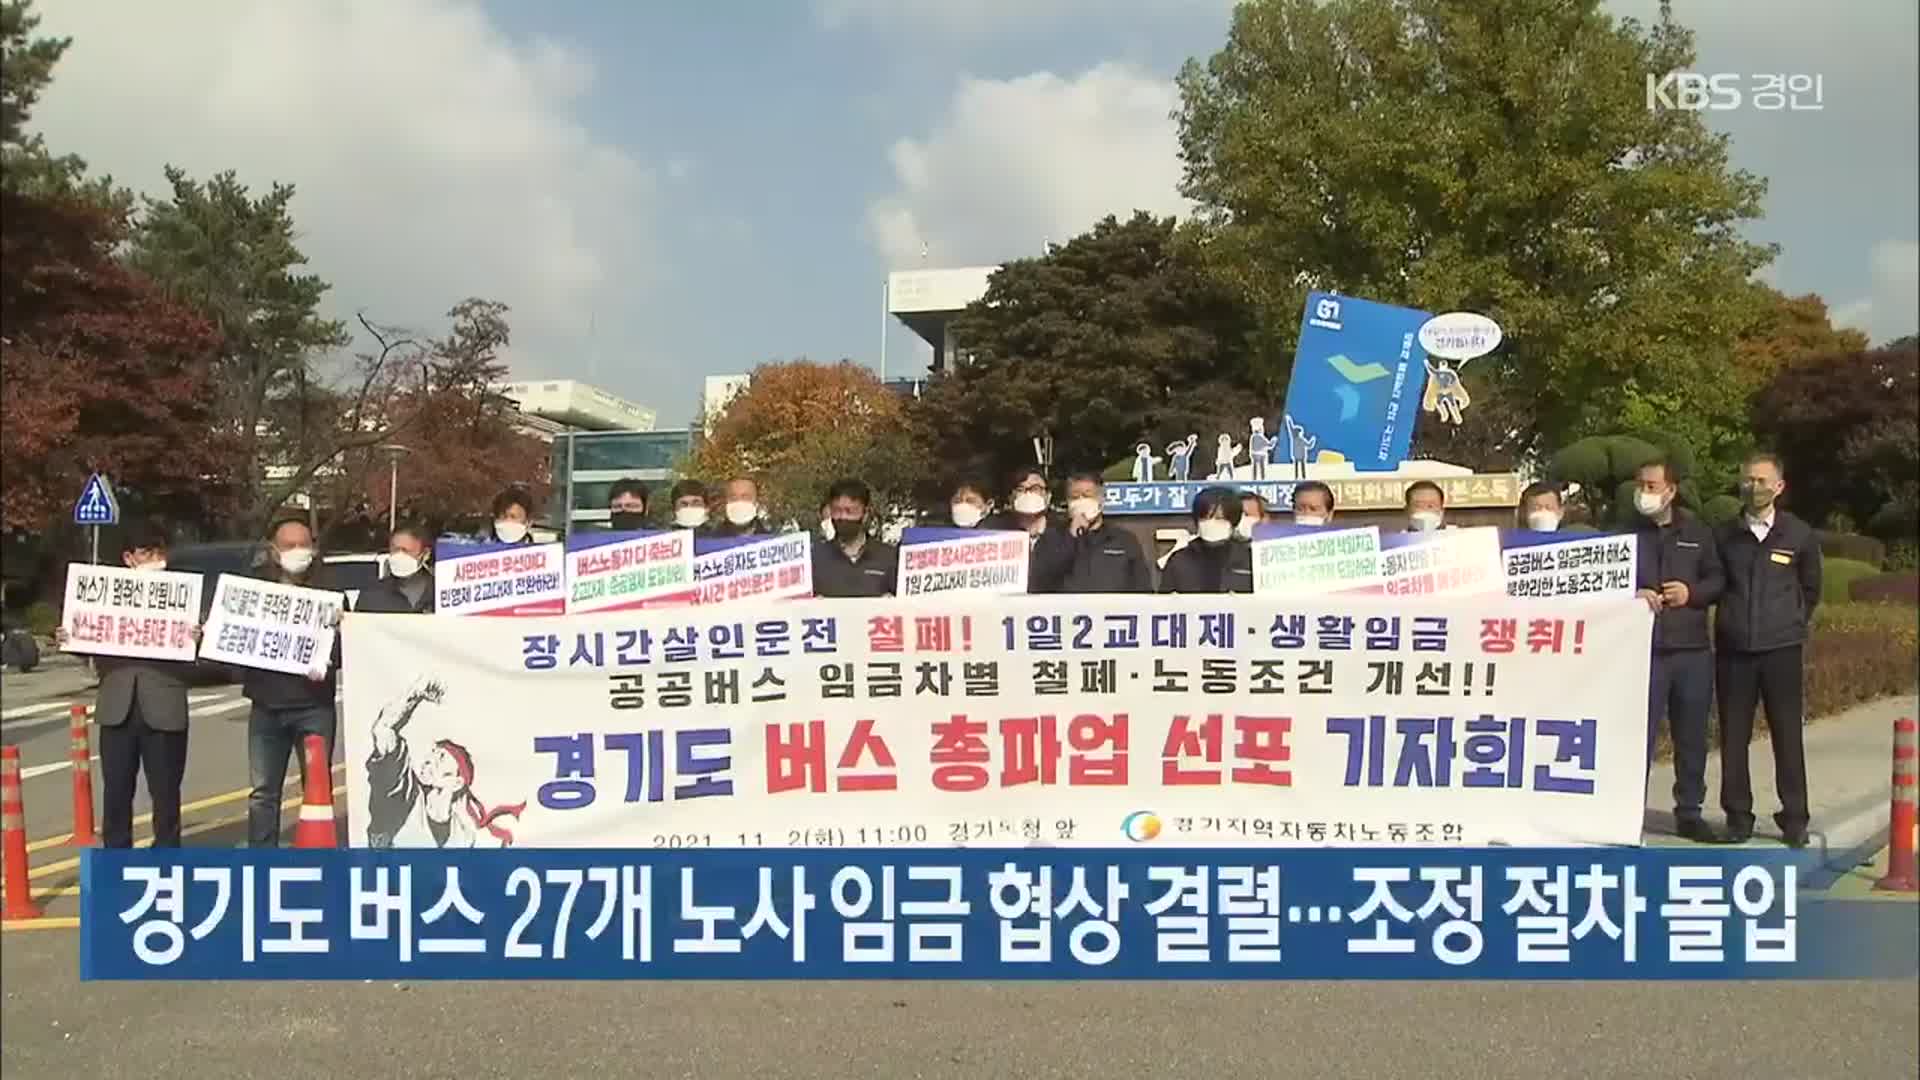 경기도 버스 27개 노사 임금 협상 결렬…조정 절차 돌입